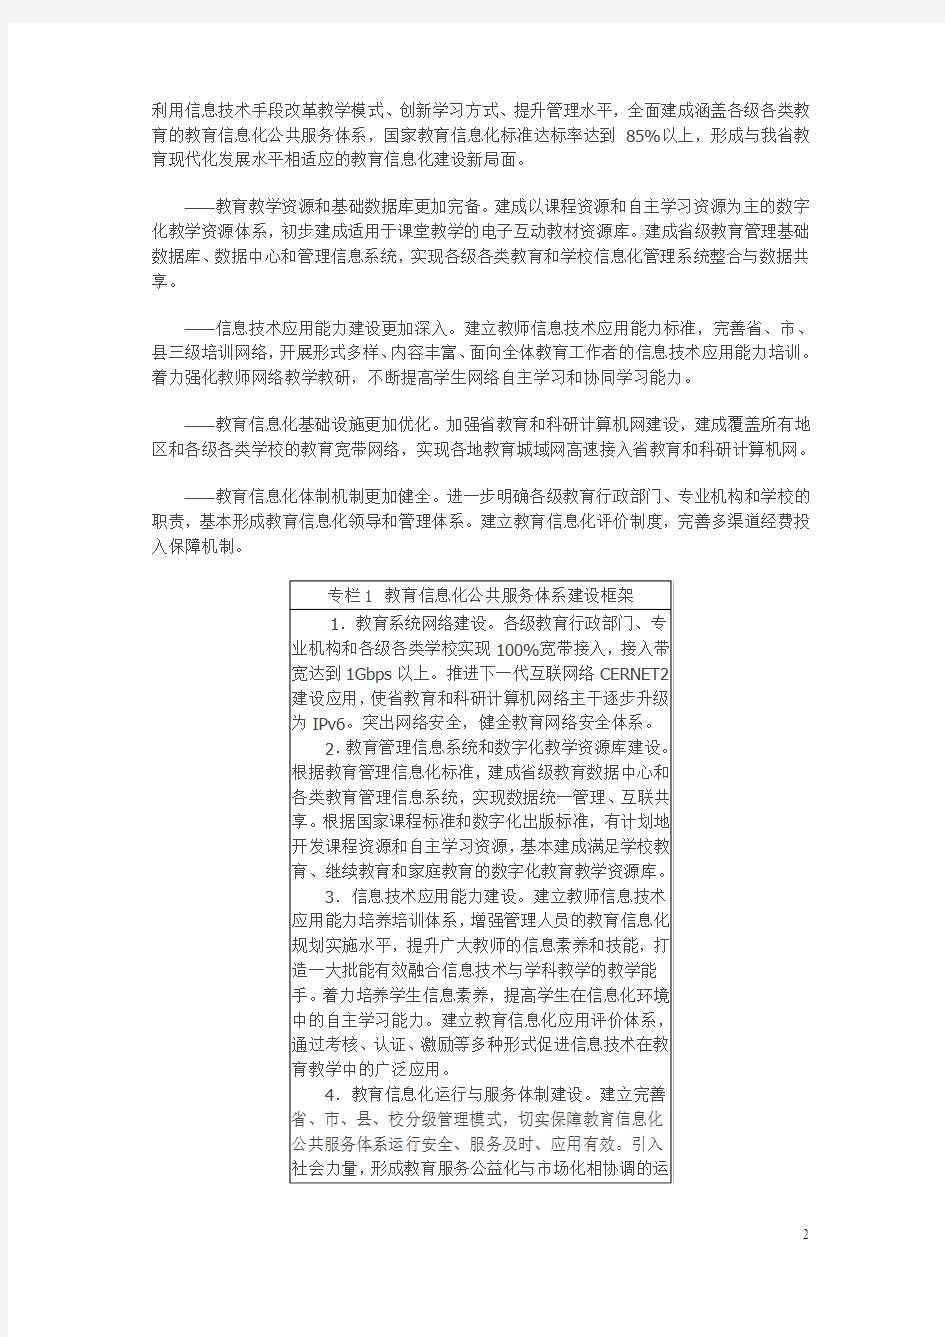 江苏省教育信息化三年行动计划